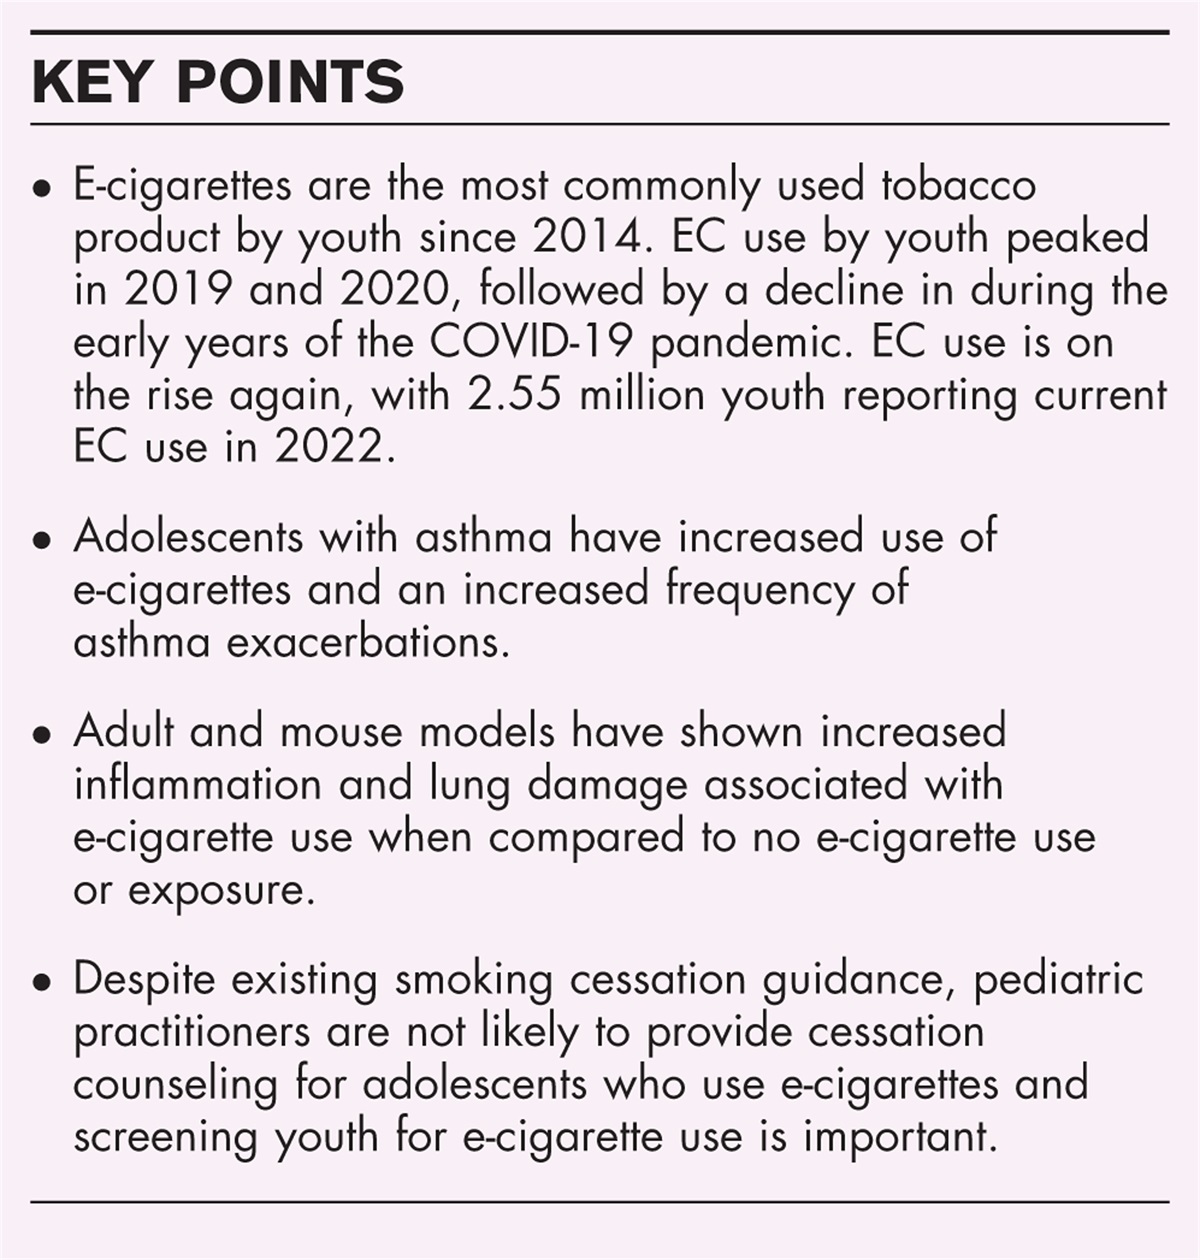 E-cigarettes and asthma in adolescents